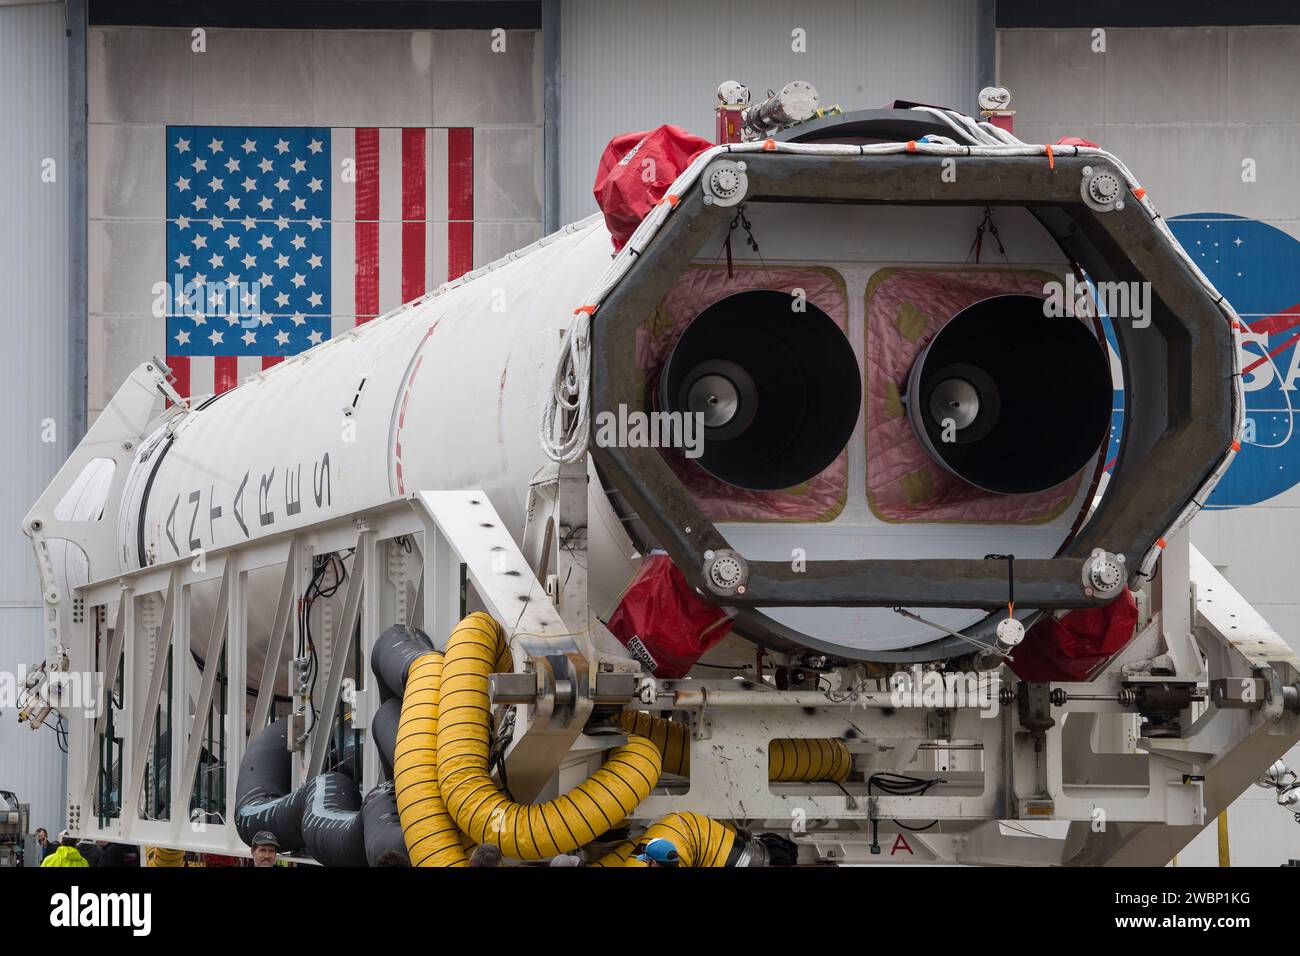 Eine Northrop Grumman Antares Rakete wird am Mittwoch, 5. Februar 2020, in der Wallops Flight Facility der NASA in Virginia auf Pad-0A ausgerollt. Northrop Grummans 13. Mit der NASA vertraglich vereinbarte Fracht-Nachfüllmission zur Internationalen Raumstation wird mehr als 7.500 Pfund Wissenschaft und Forschung, Besatzungsbedarf und Fahrzeugausrüstung an das Orbitallabor und seine Besatzung liefern. Die CRS-13 Cygnus-Raumsonde ist nach dem ersten afroamerikanischen Astronauten Major Robert Henry Lawrence Jr. benannt und soll am Sonntag, 9. Februar um 17:39 Uhr EST starten. Stockfoto